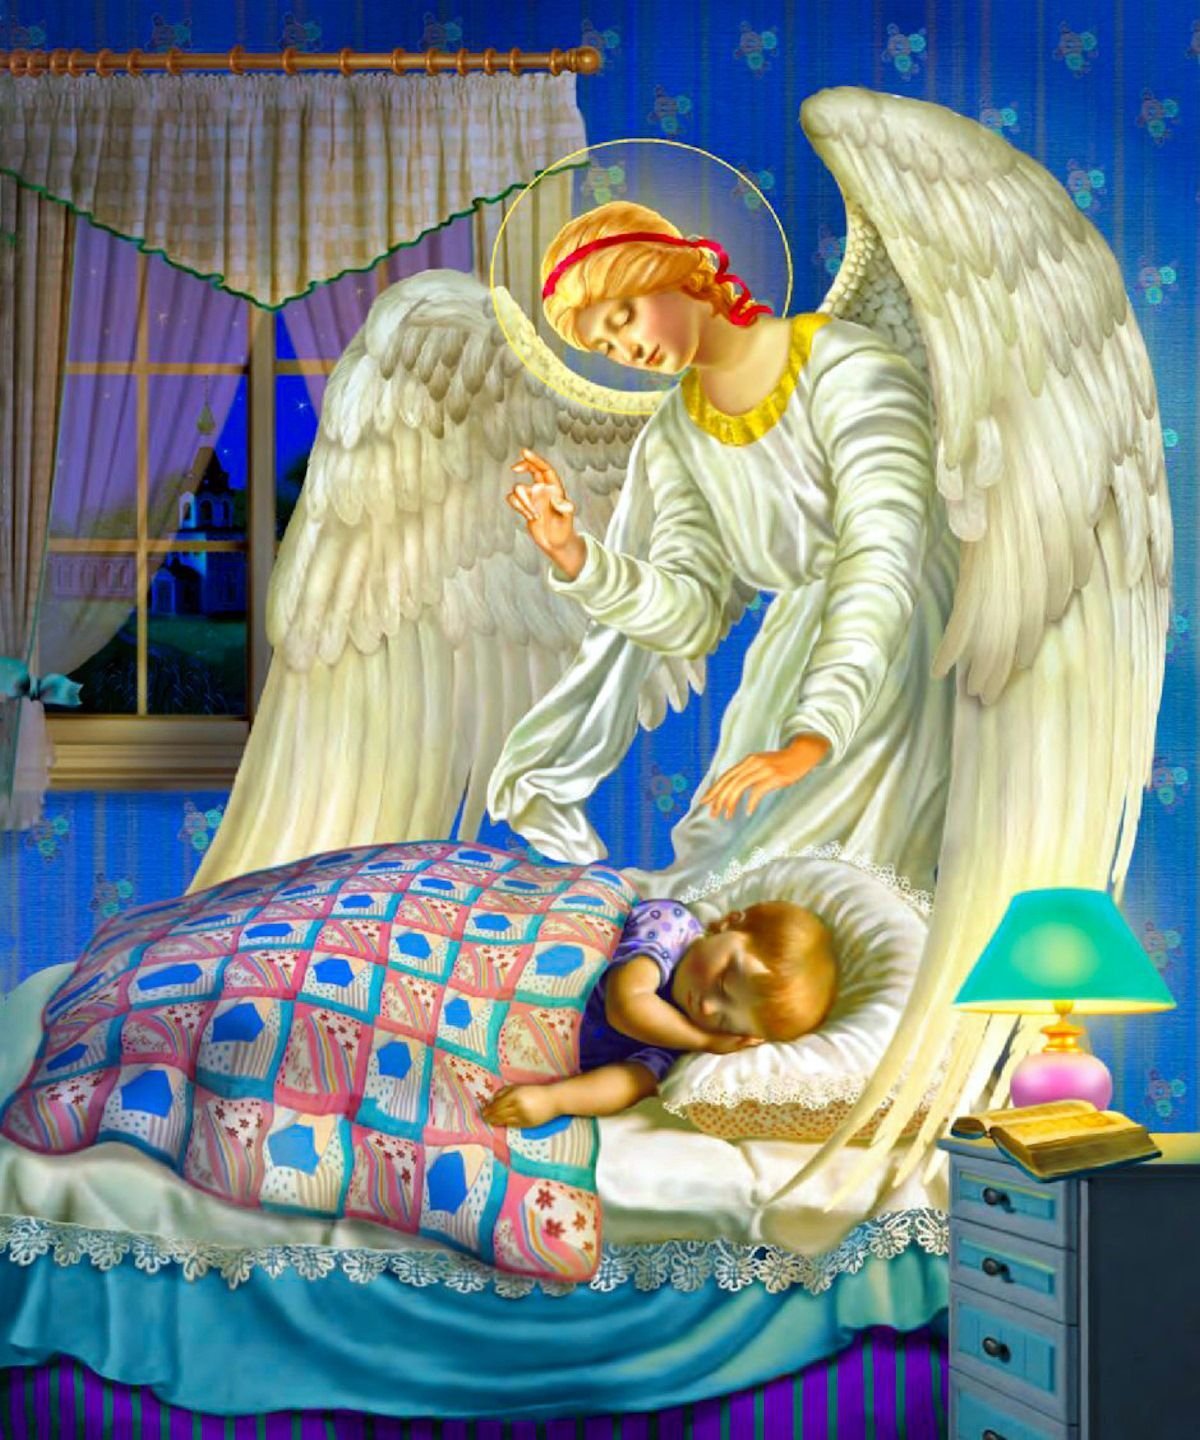 Картинка ангела ко сну доброй. Ангел хранитель и дети. Ангел охраняет сон. Ангела ко сну. Ангел снов.